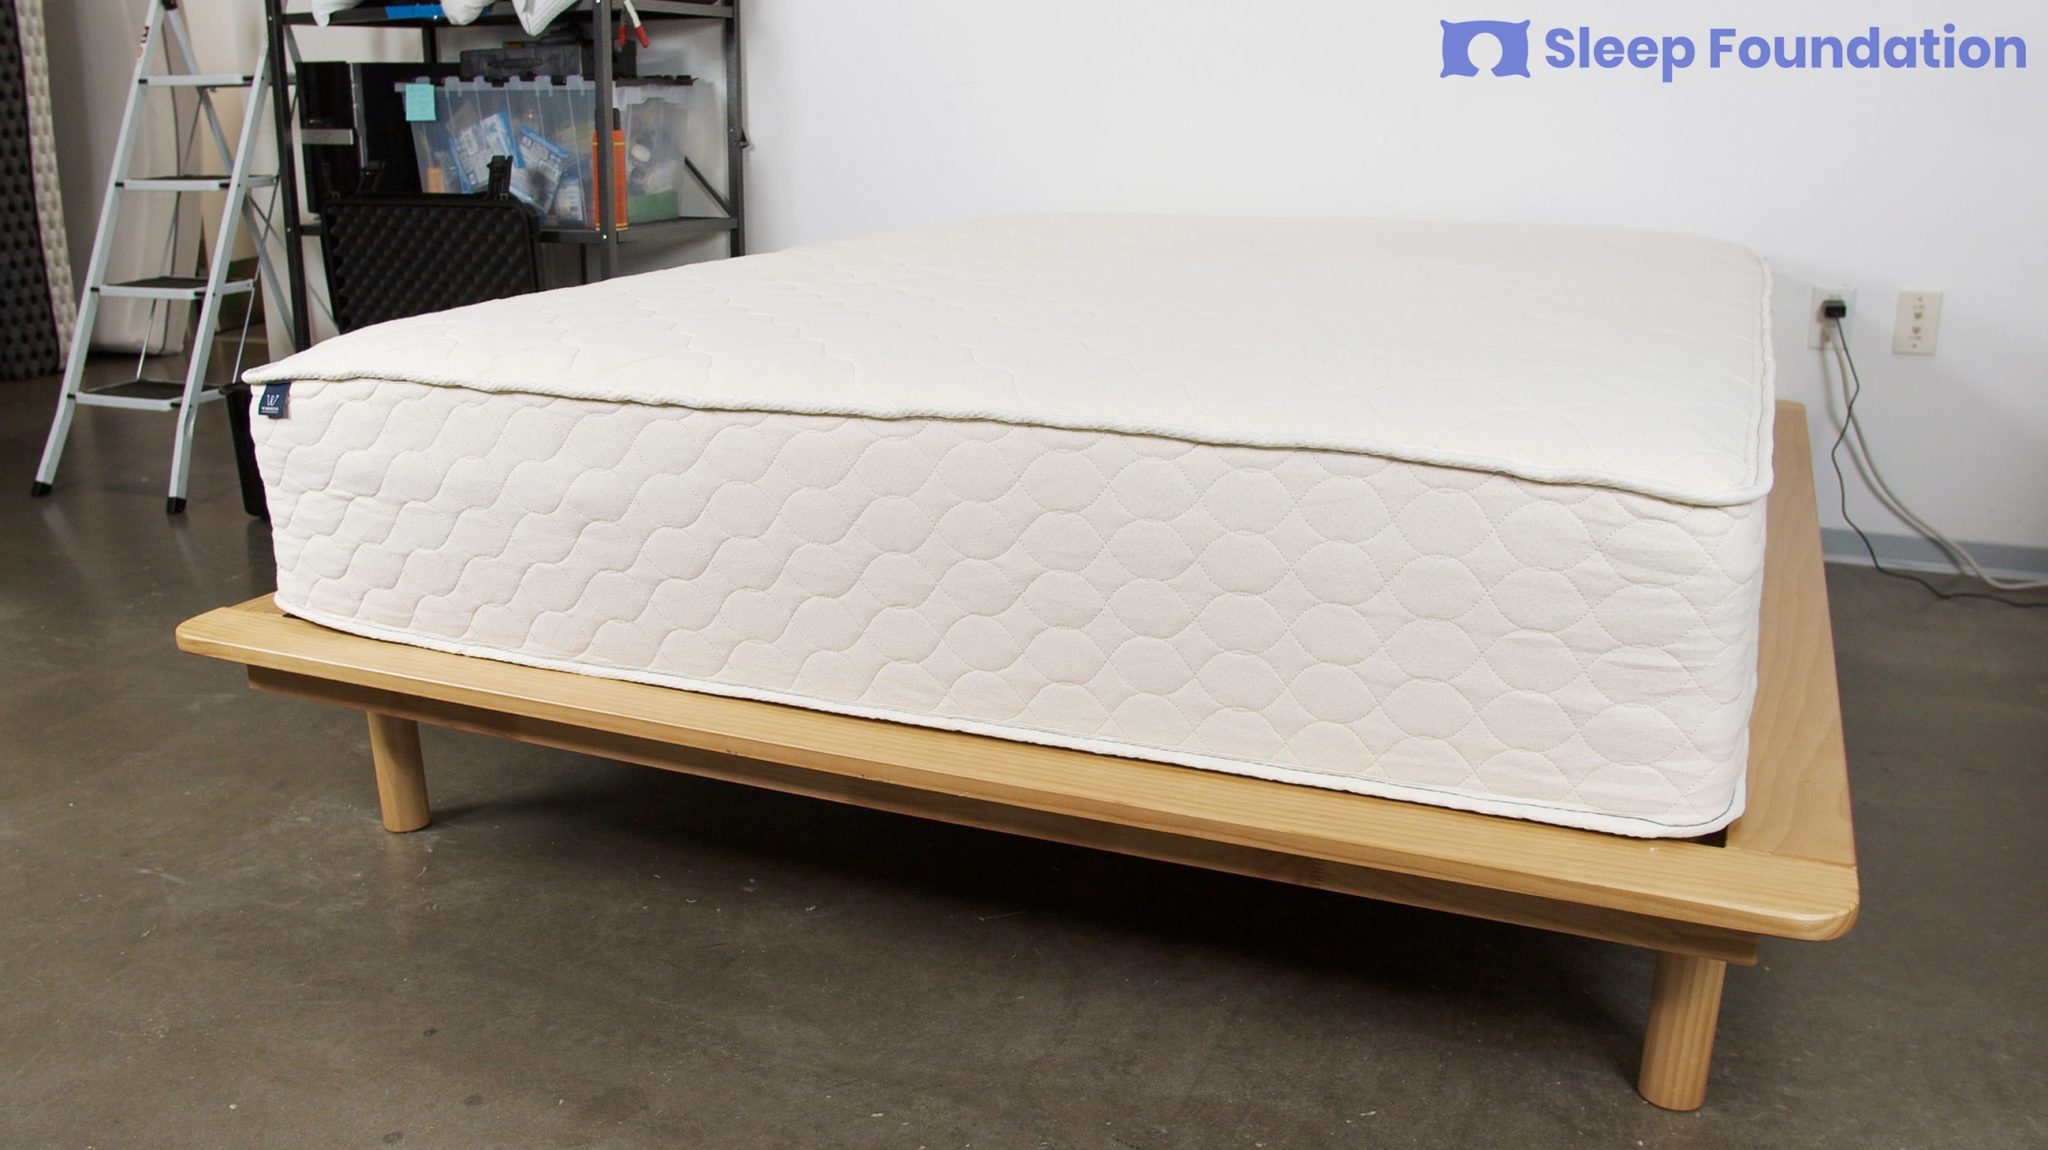 best nion-toxic mattresses